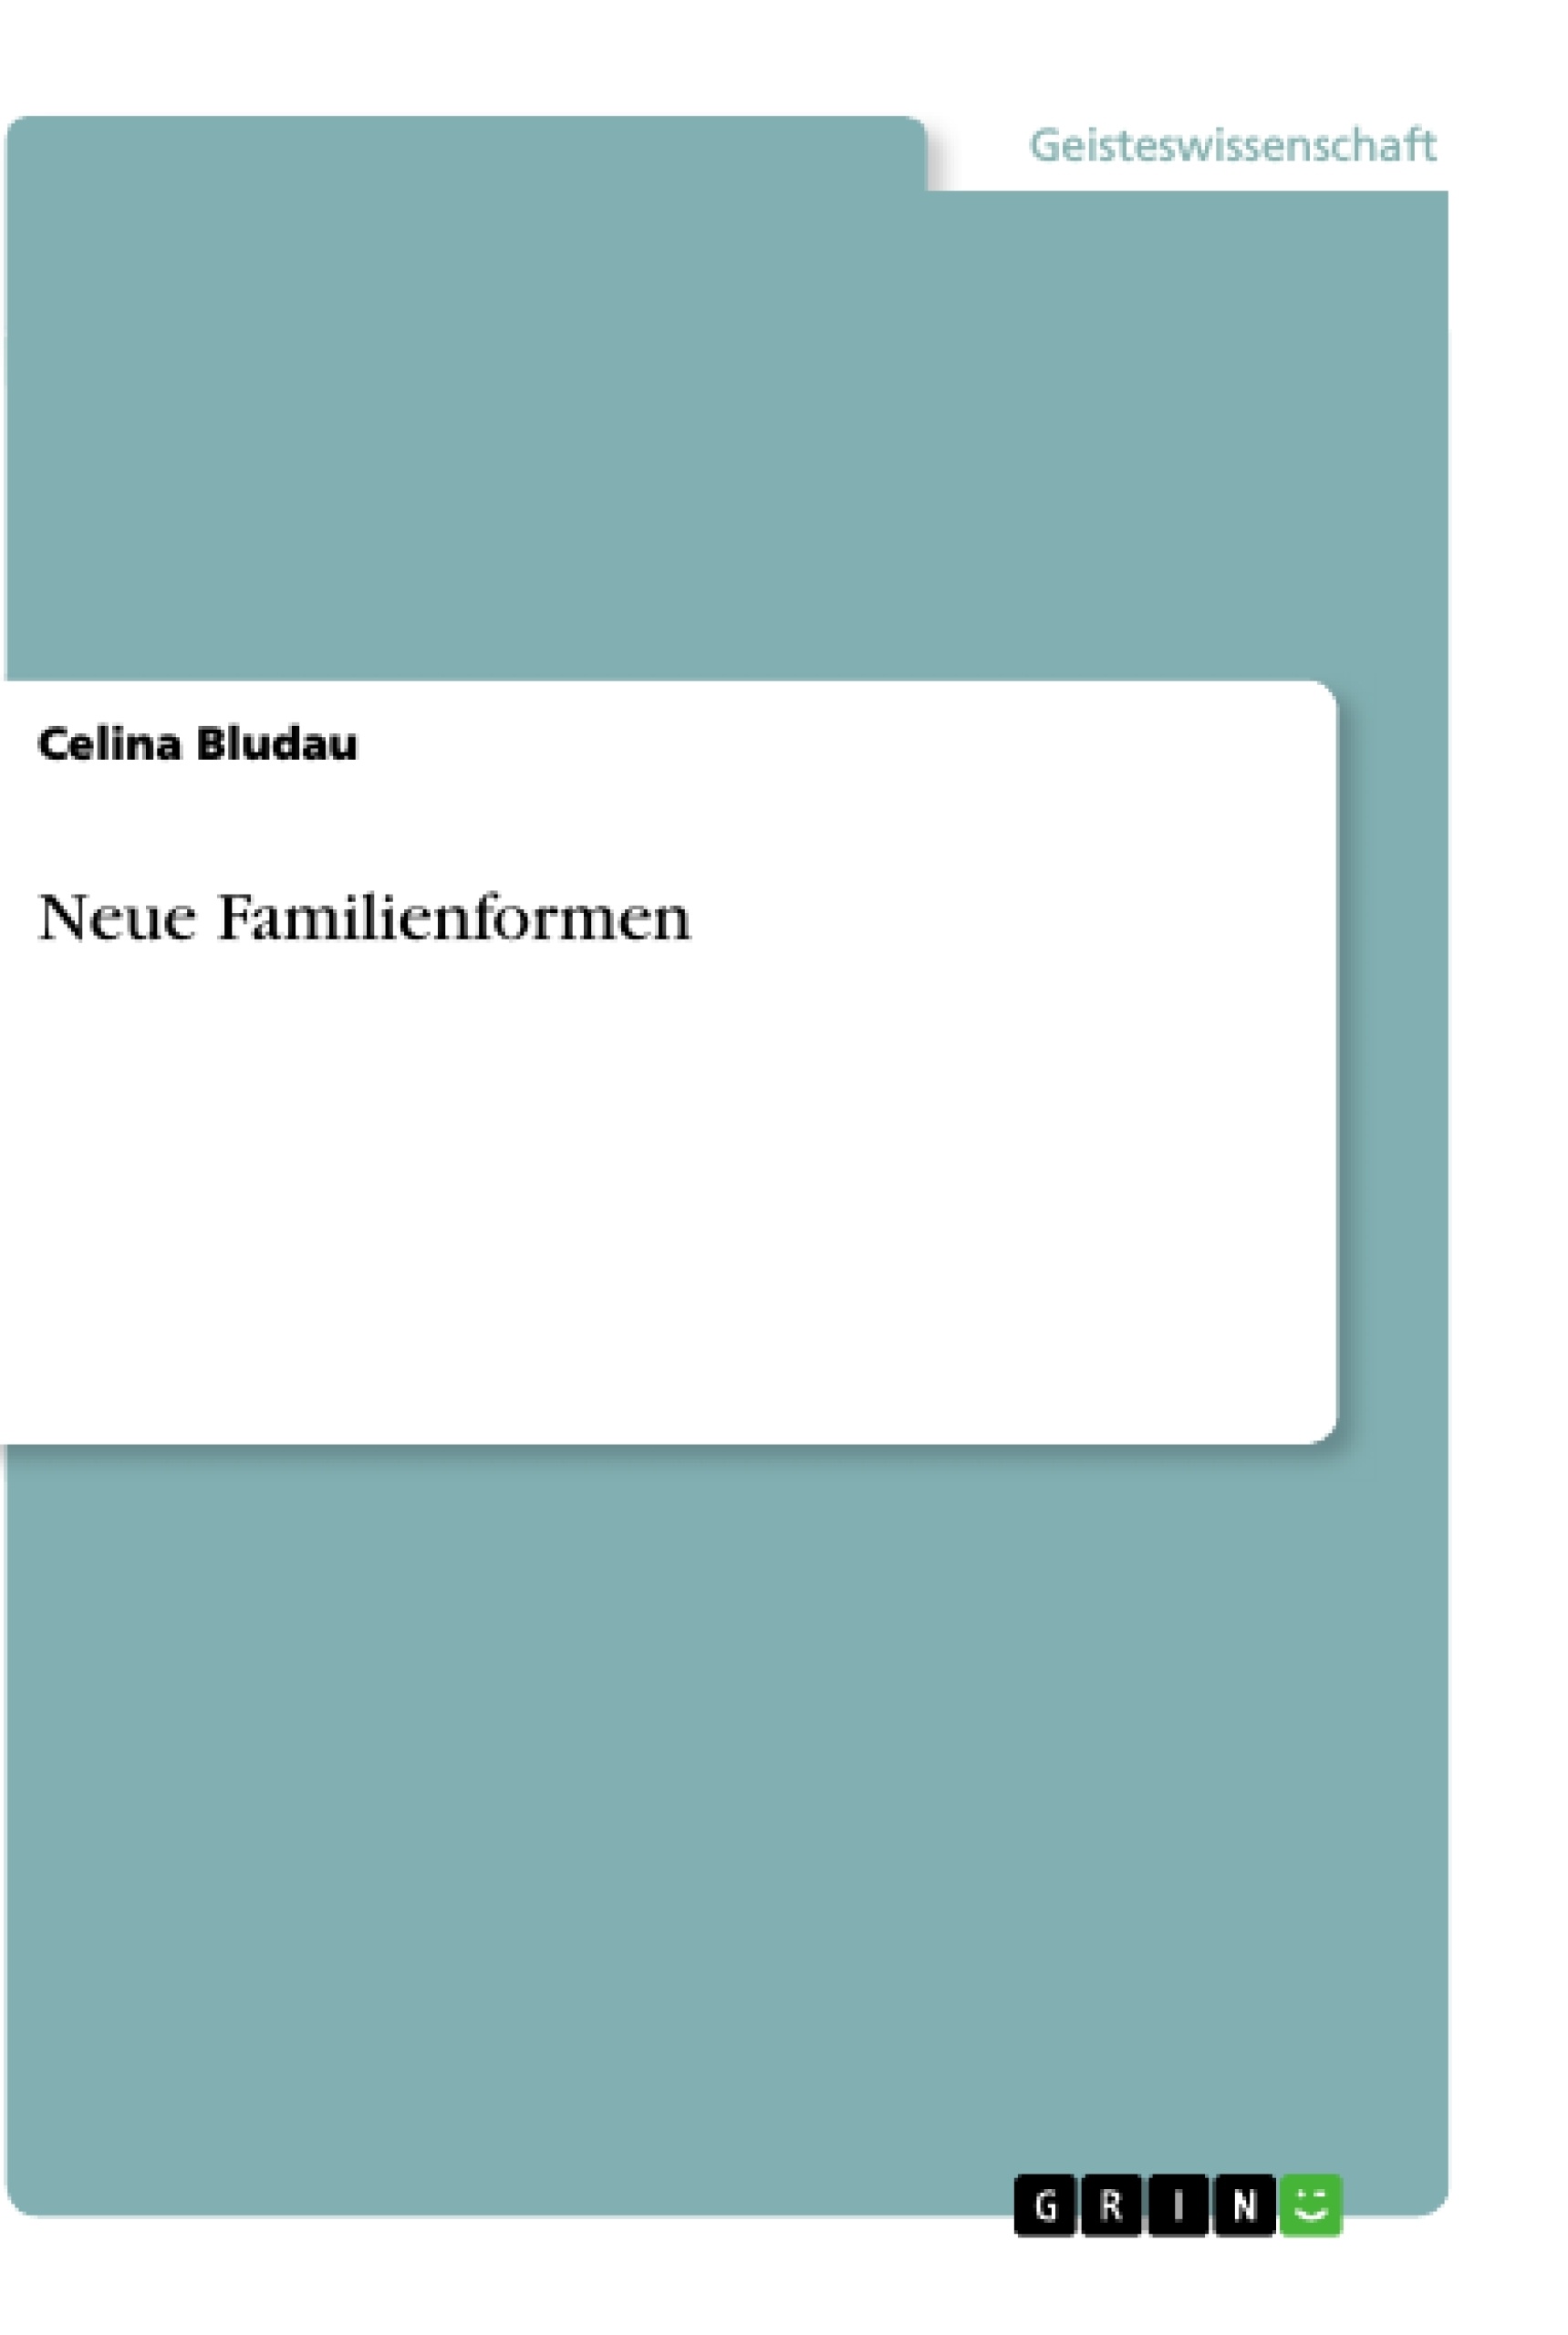 Título: Neue Familienformen